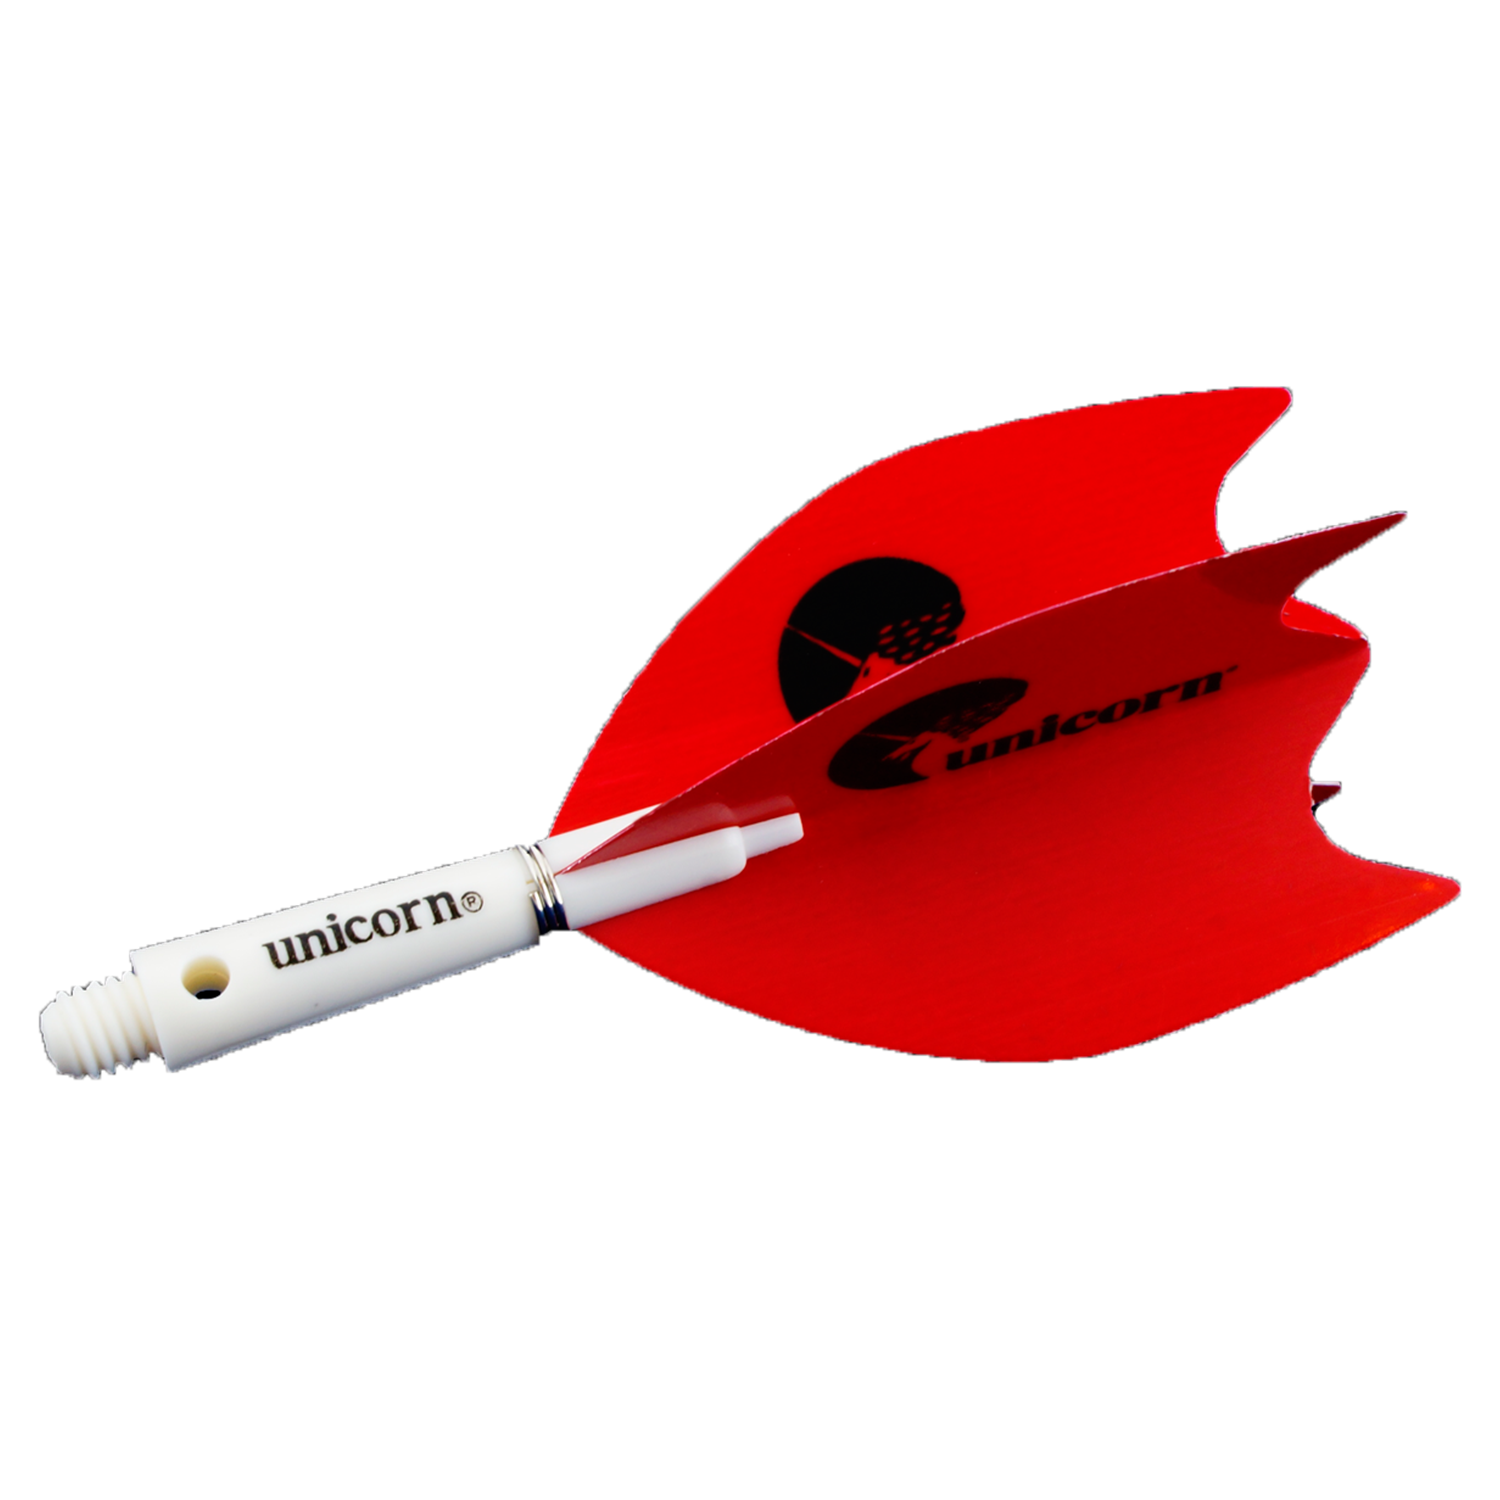 Unicorn Super Maestro .125 Fin Dart Wings - Red